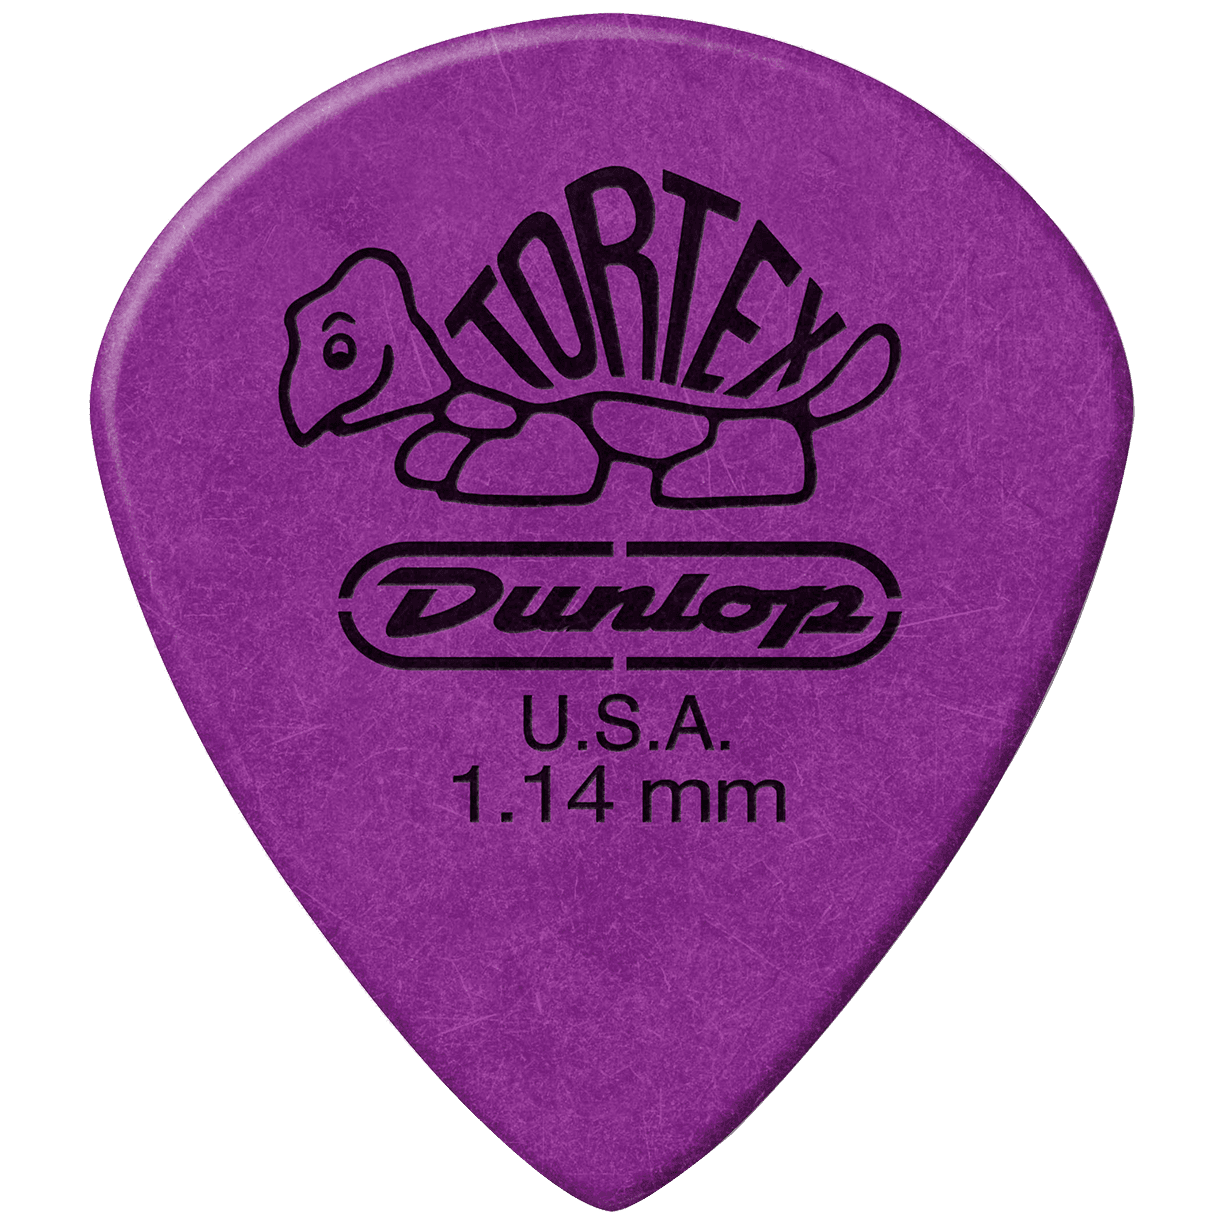 Dunlop Tortex Jazz III XL 1.14 Player's Pack 12 Stück